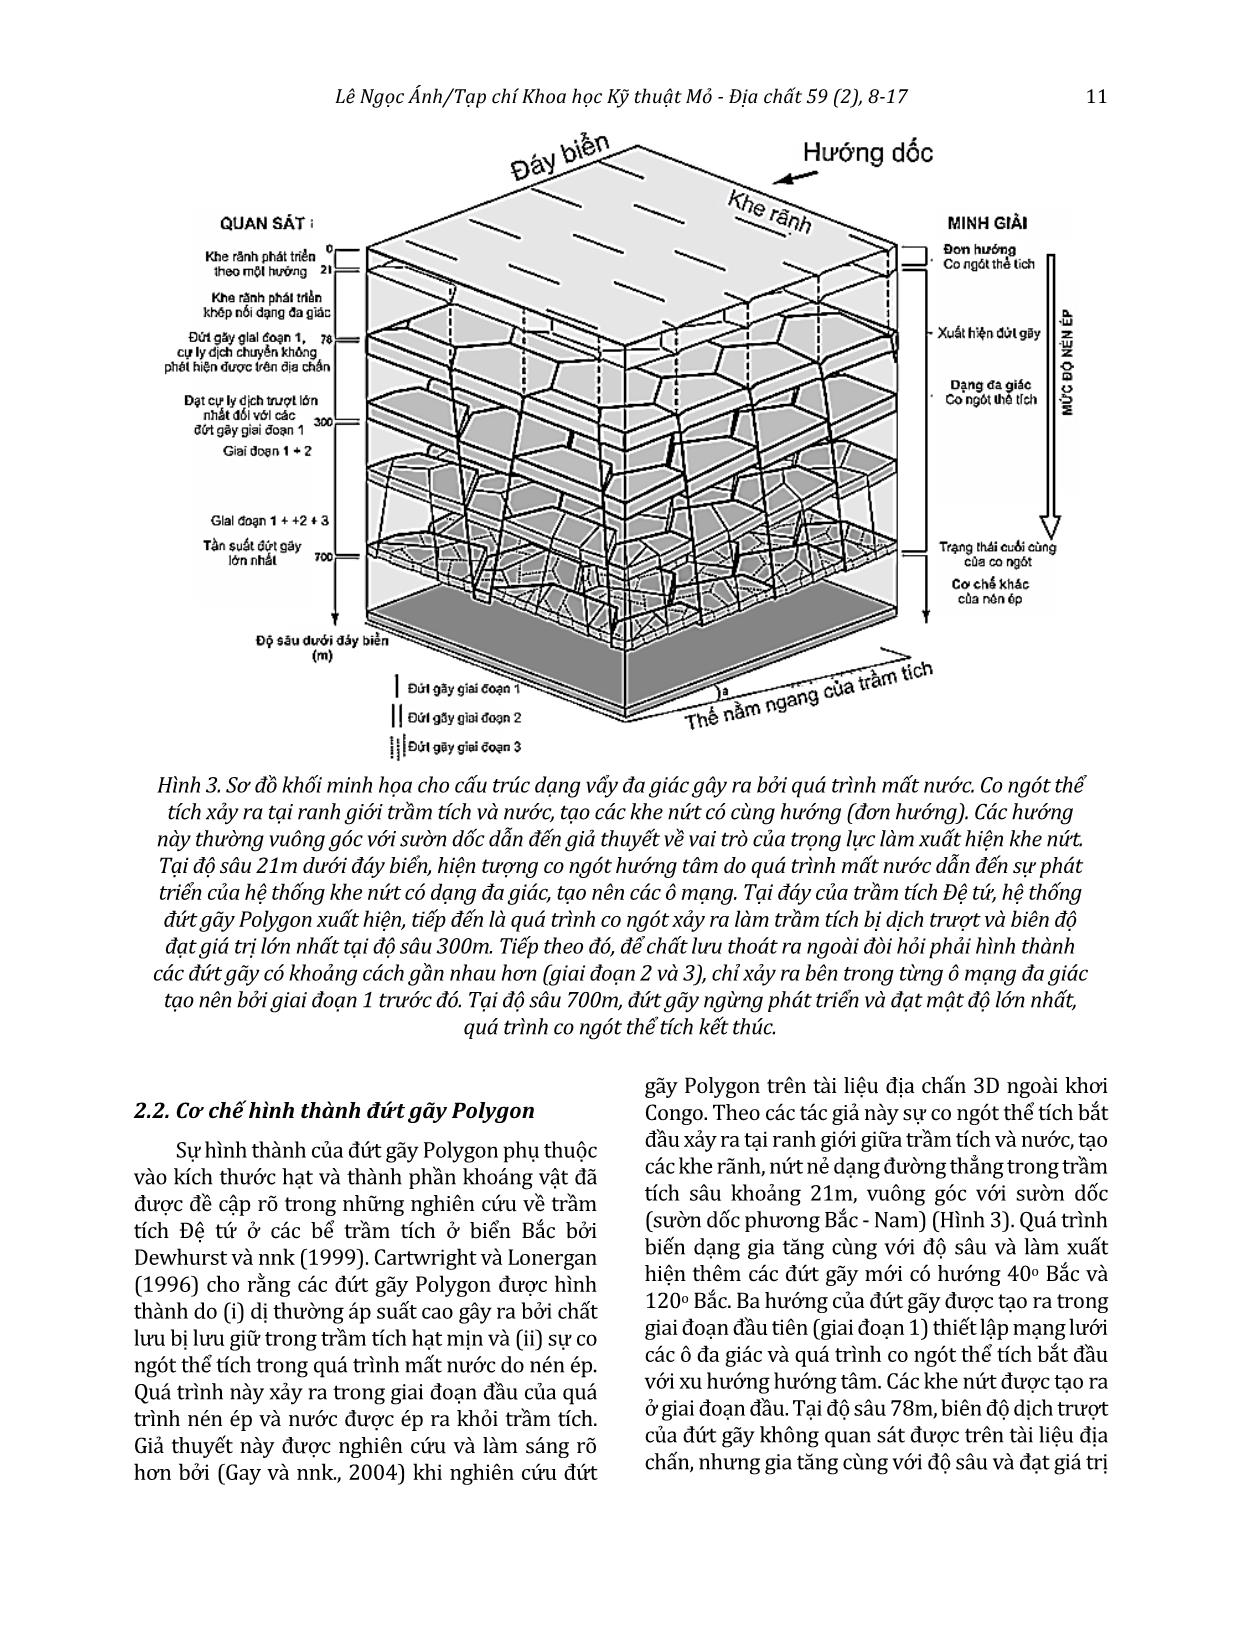 Đặc điểm của đứt gãy Polygon và ý nghĩa của chúng đối với yếu tố chắn dầu khí trang 4